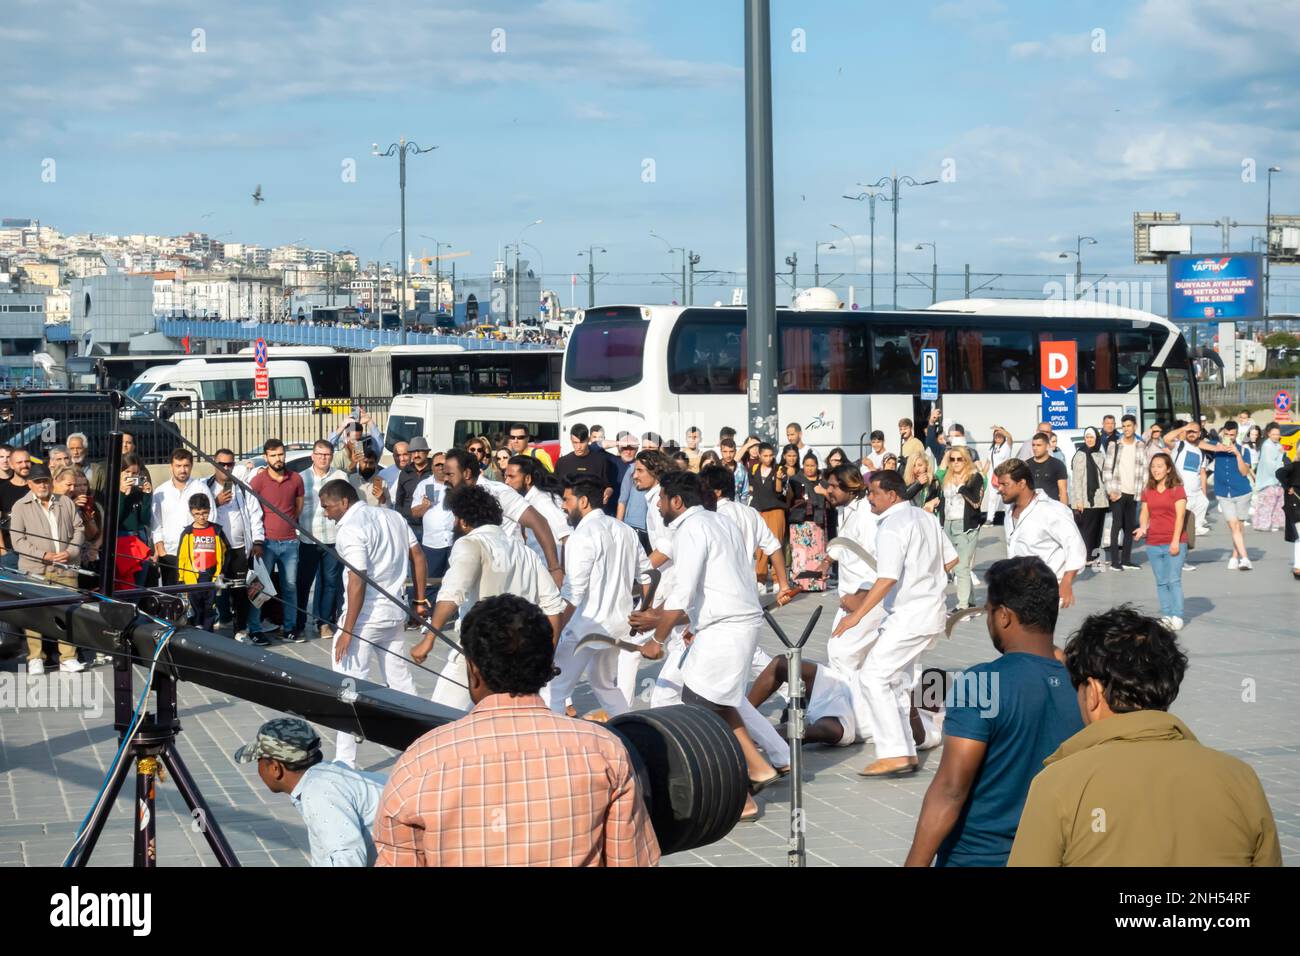 Tournage à Istanbul Turquie. Grand équipage de vêtements blancs sur le fim dans une rue urbaine à Fatih, Istanbul, Turquie Banque D'Images